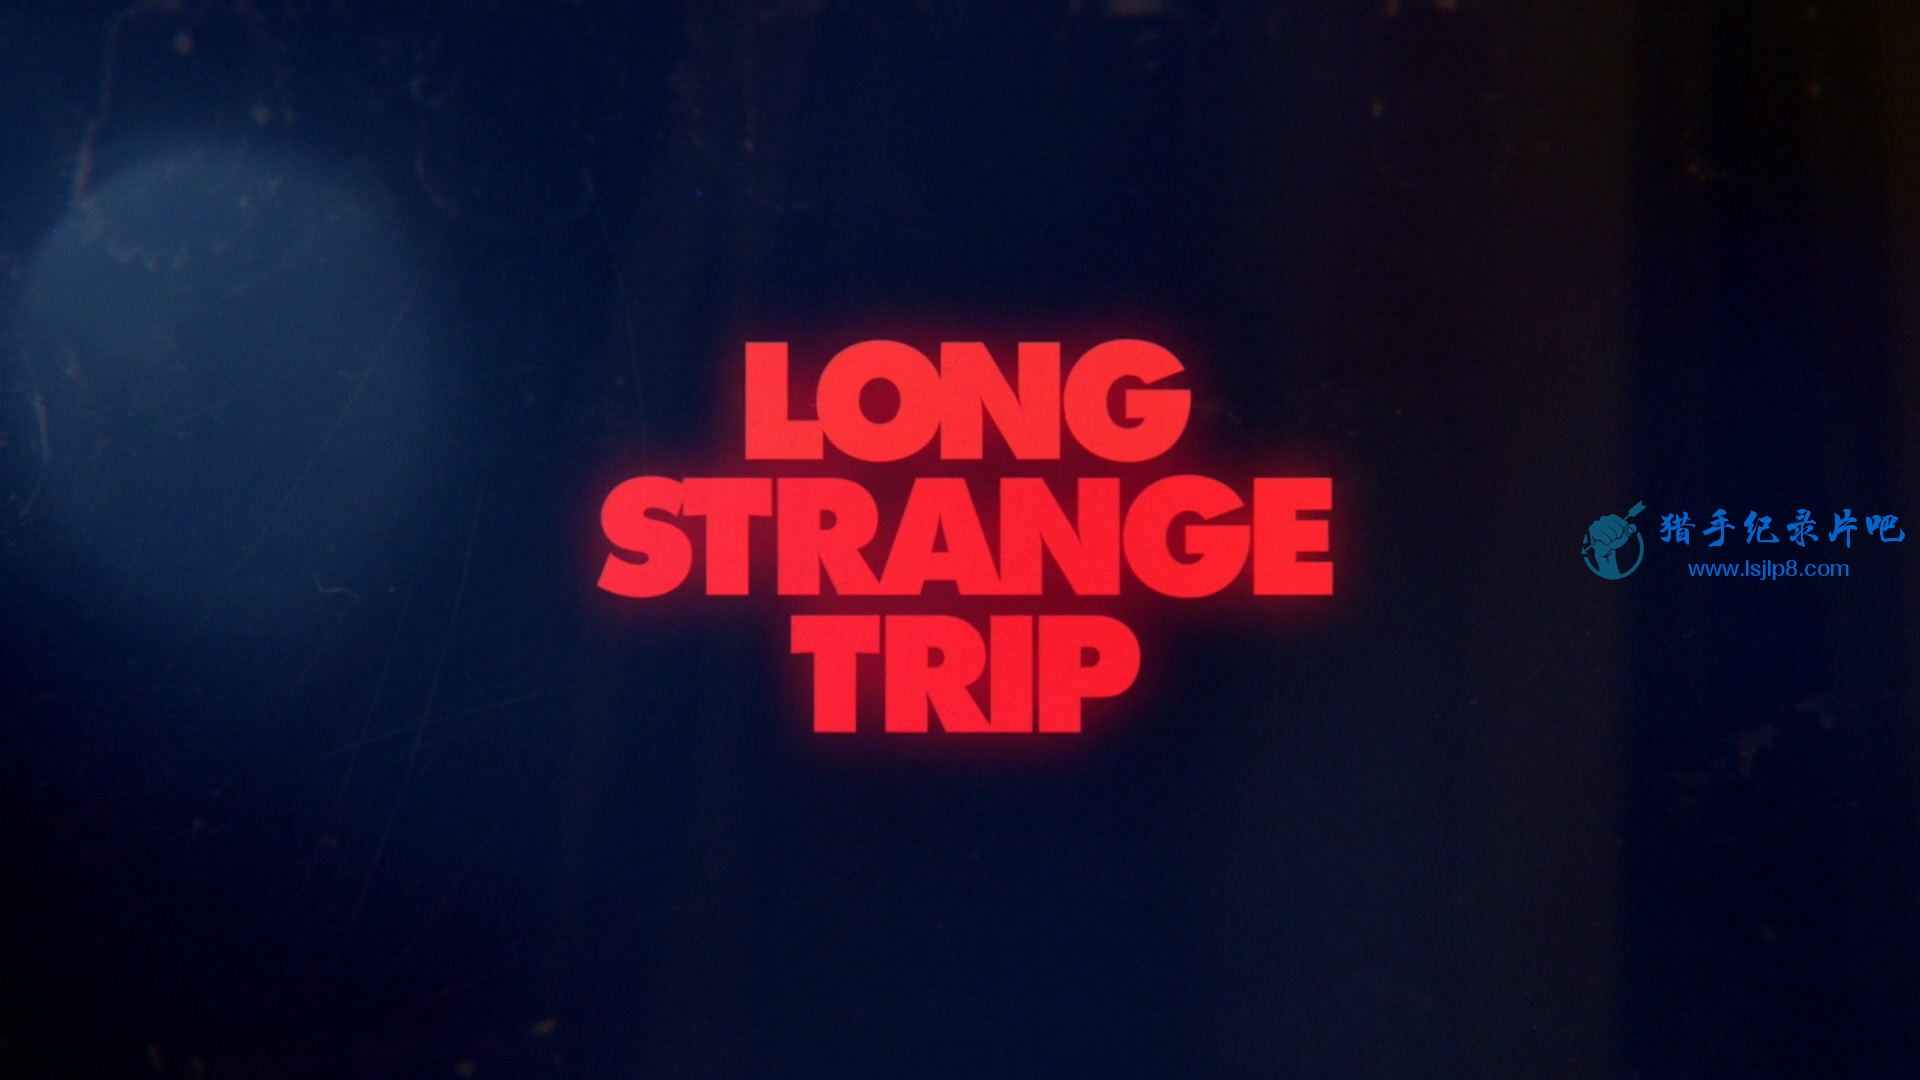 A.Long.Strange.Trip.S01E01.1080p.AMZN.WEB-DL.DDP5.1.H264-Ao.mkv_20200615_111356..jpg